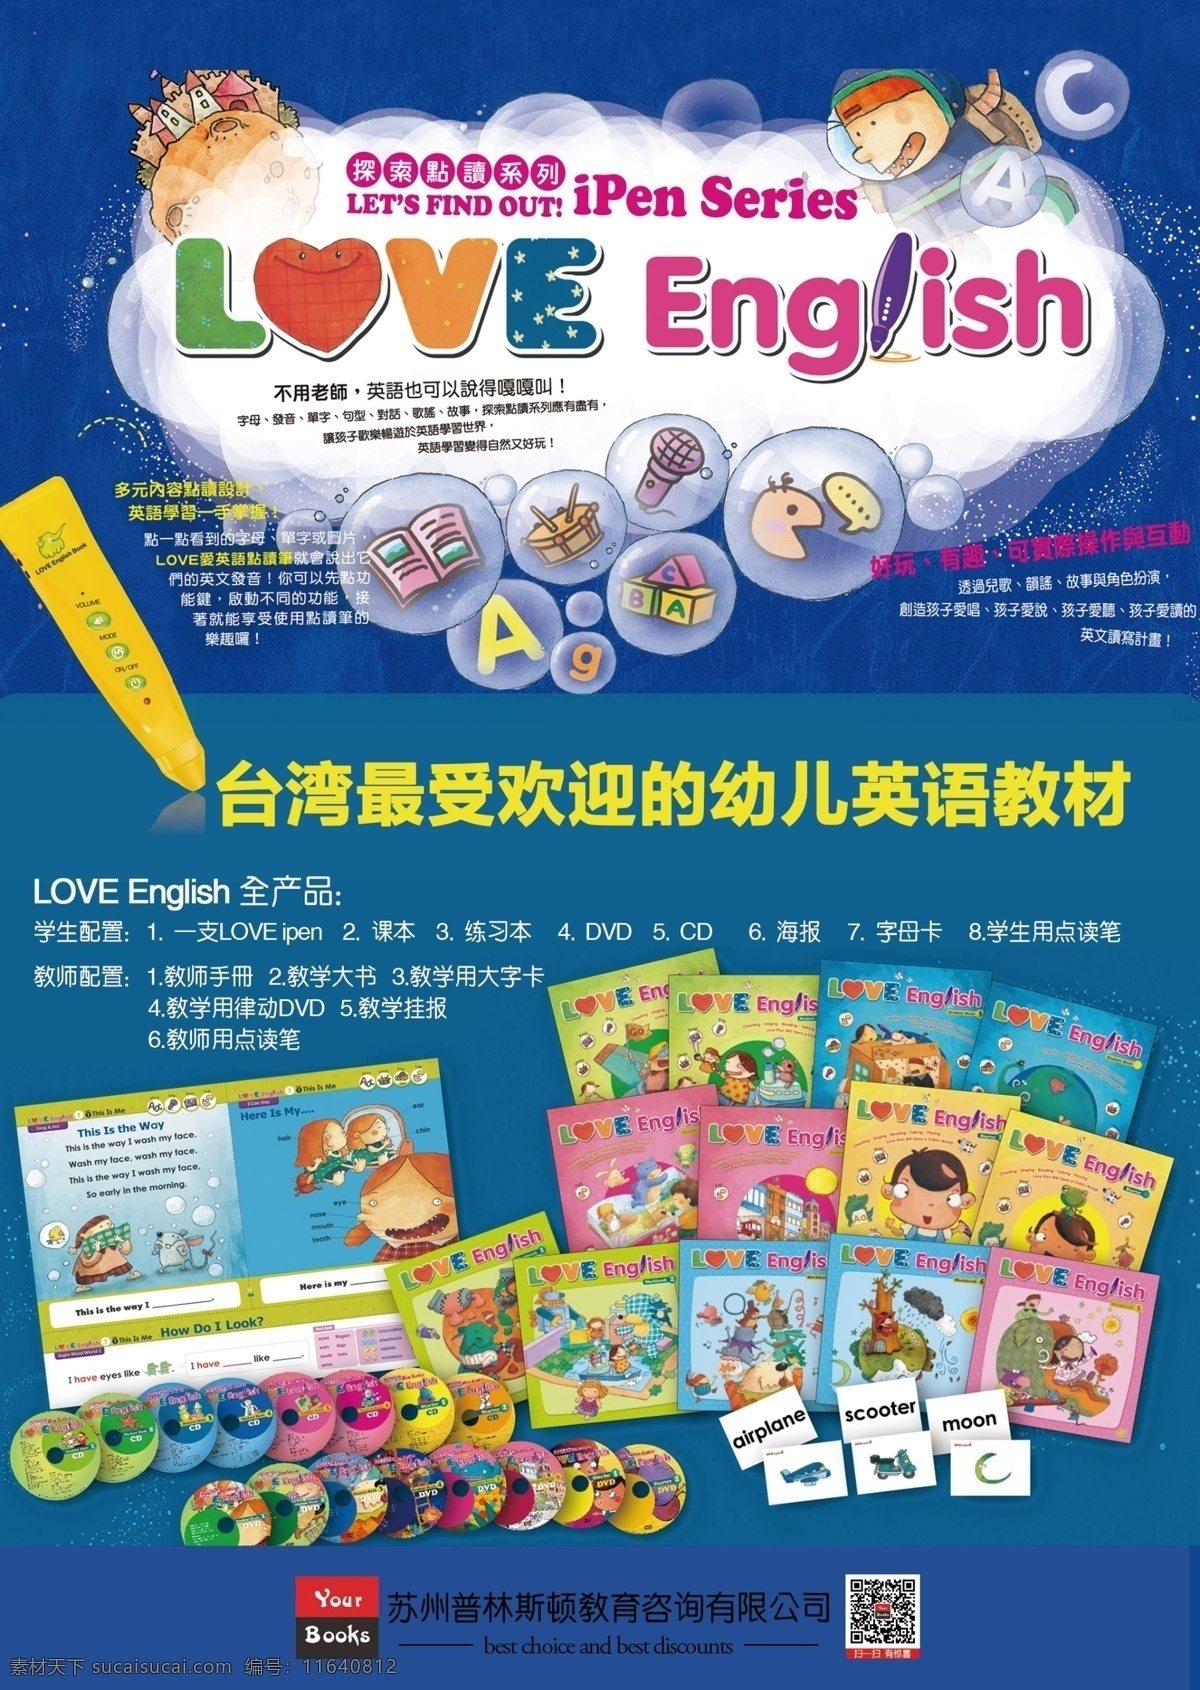 原创 幼儿英语教材 台湾 love english 蓝色